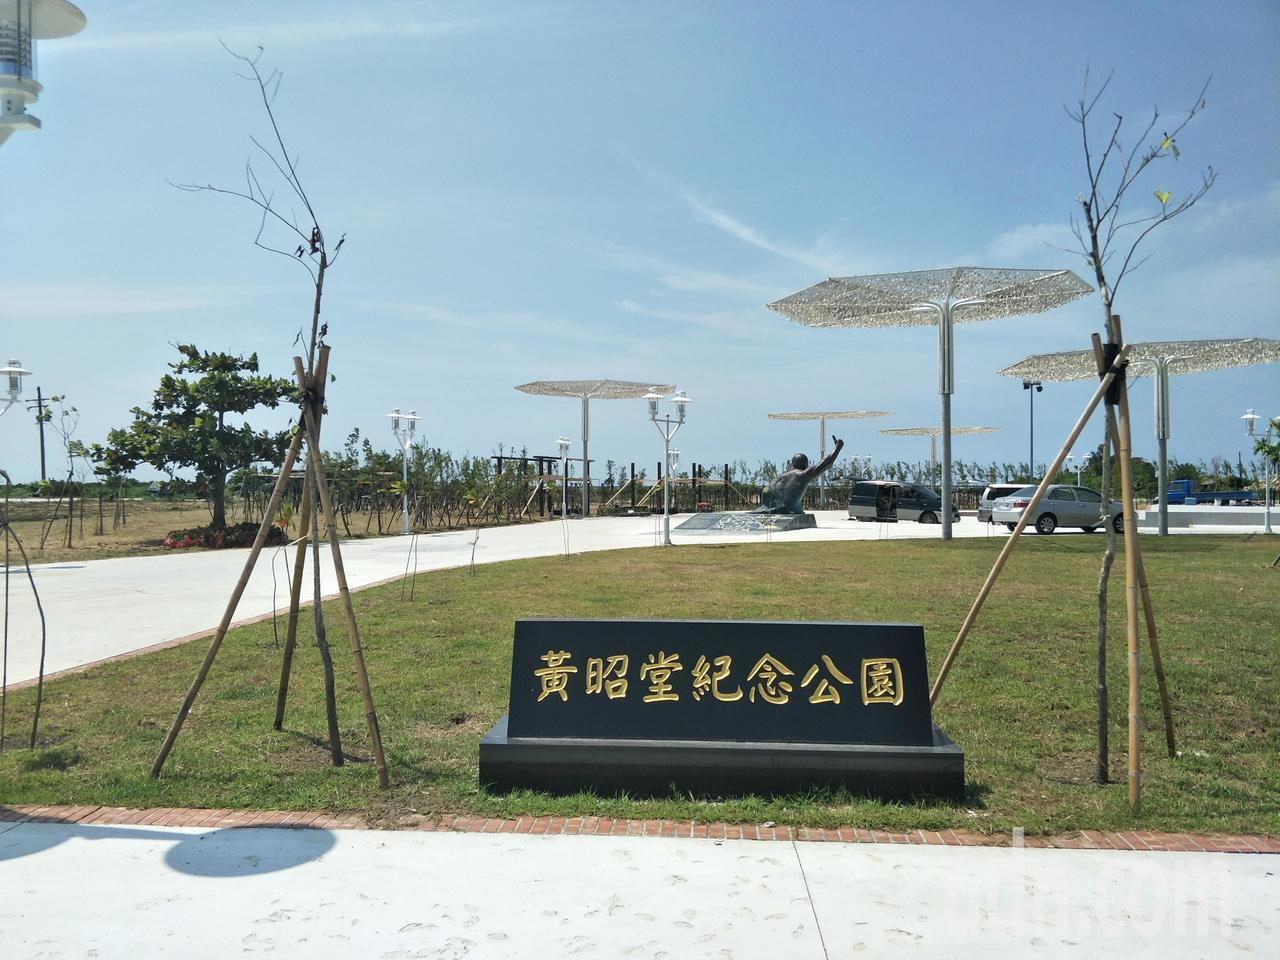 台湾首次为“台独”分子建公园 蔡英文出席启用仪式